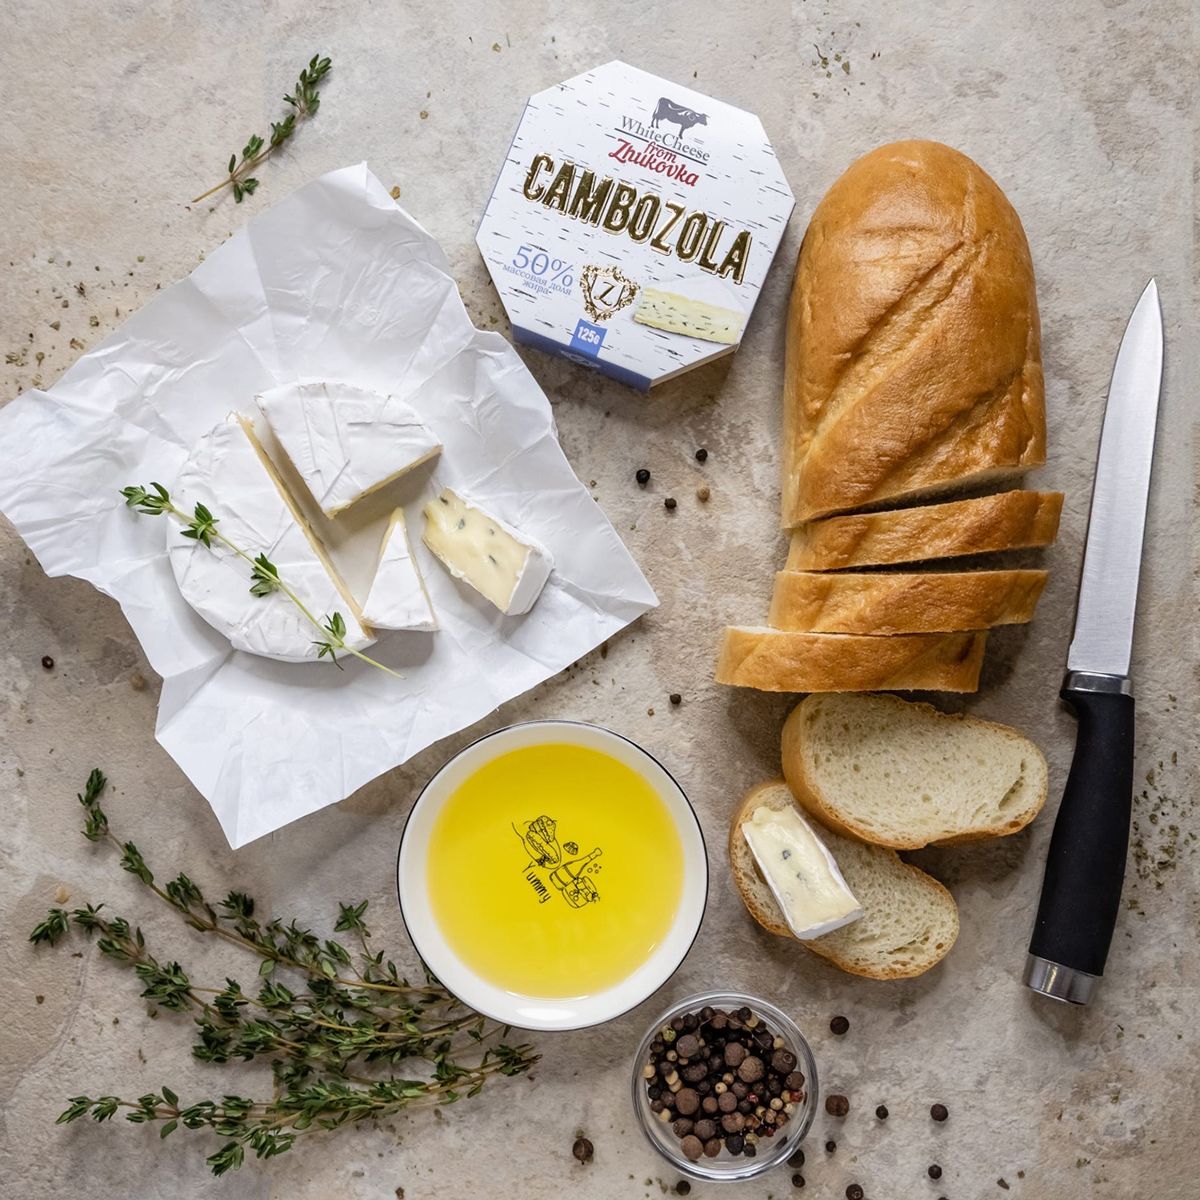 Сыр Cambozola впервые начал производиться в Германии, а в процессе его приготовления используются сразу два наиболее ценных вида плесени 